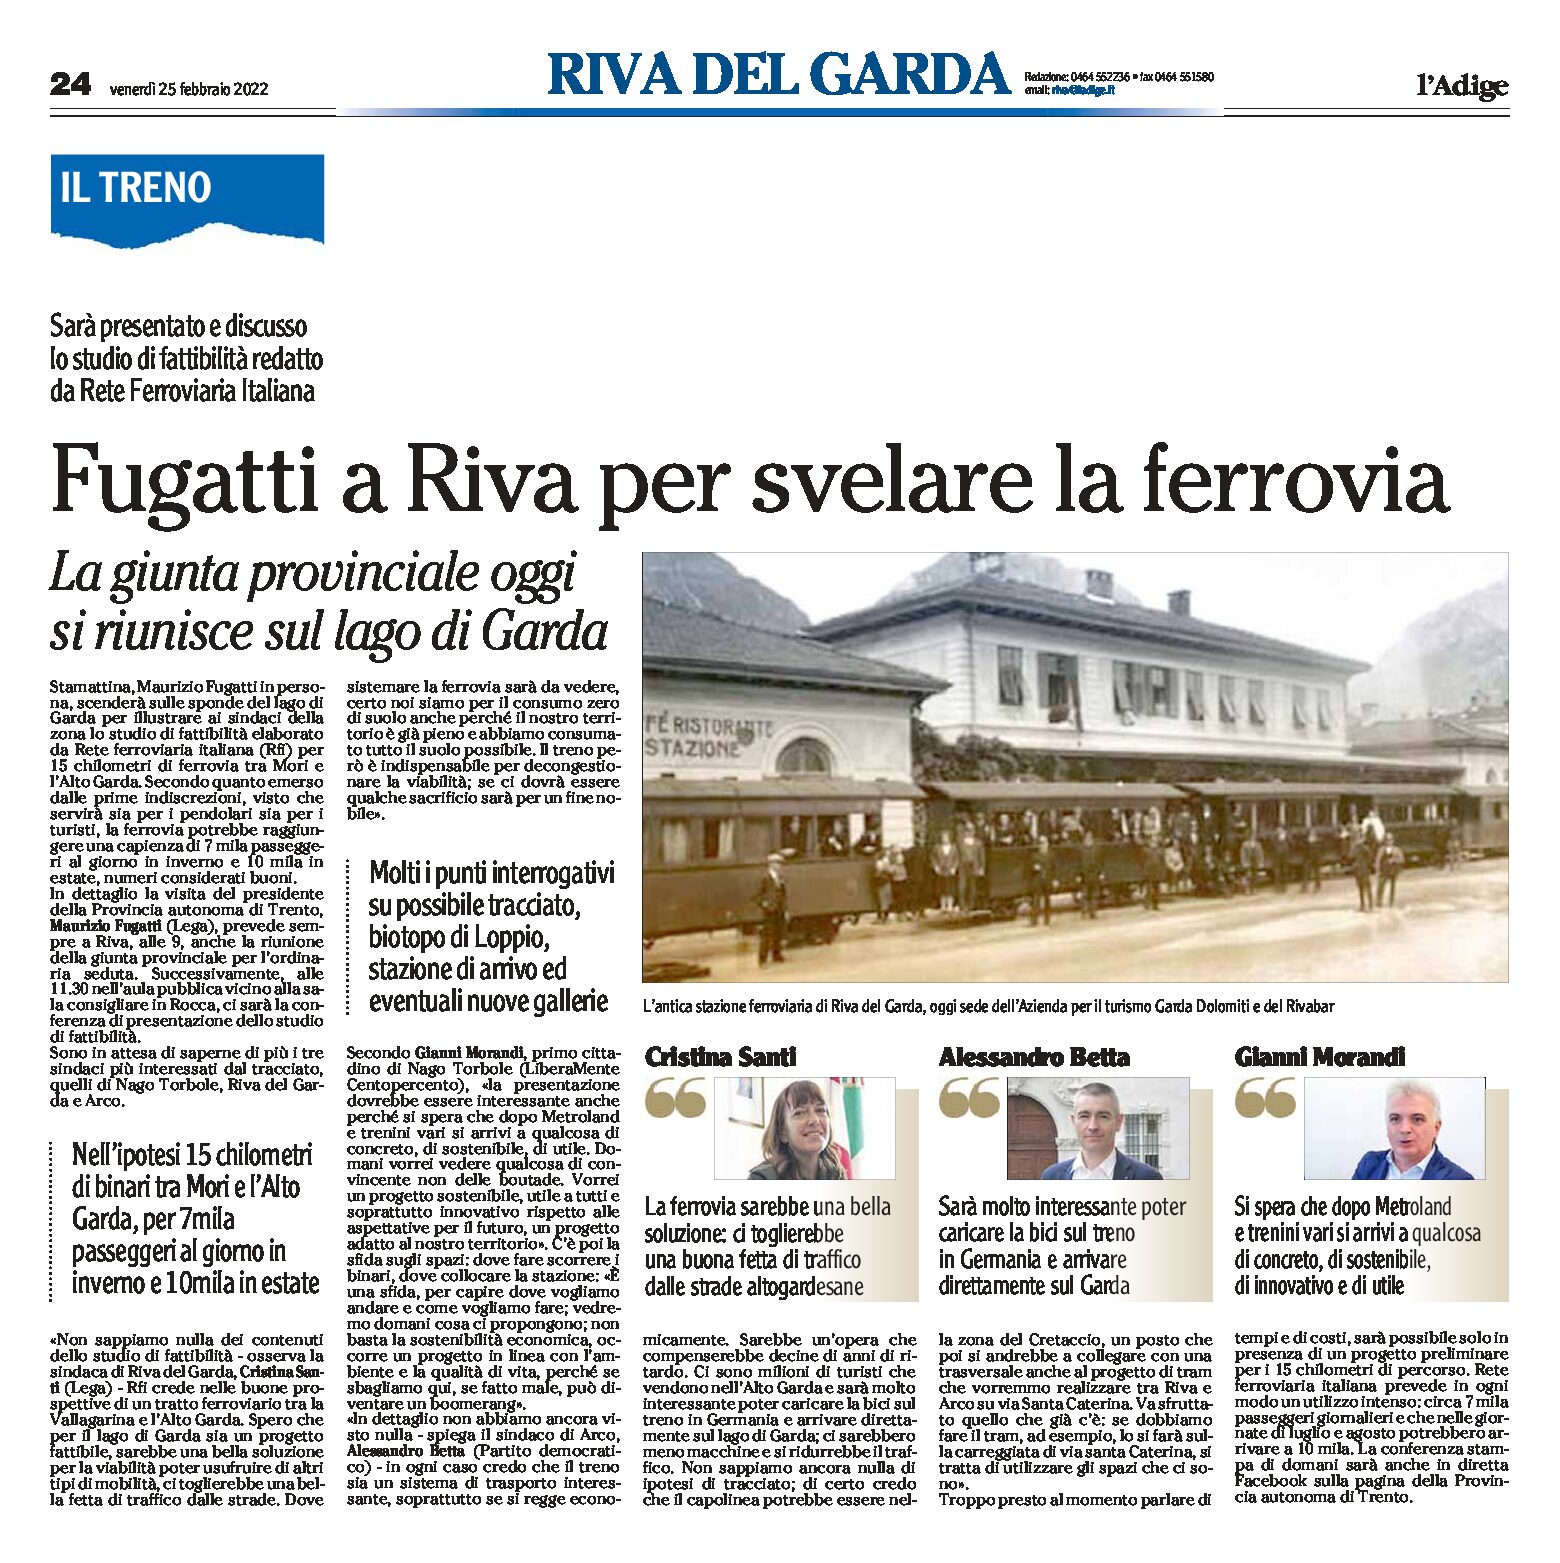 Lago di Garda: Fugatti a Riva per svelare la ferrovia